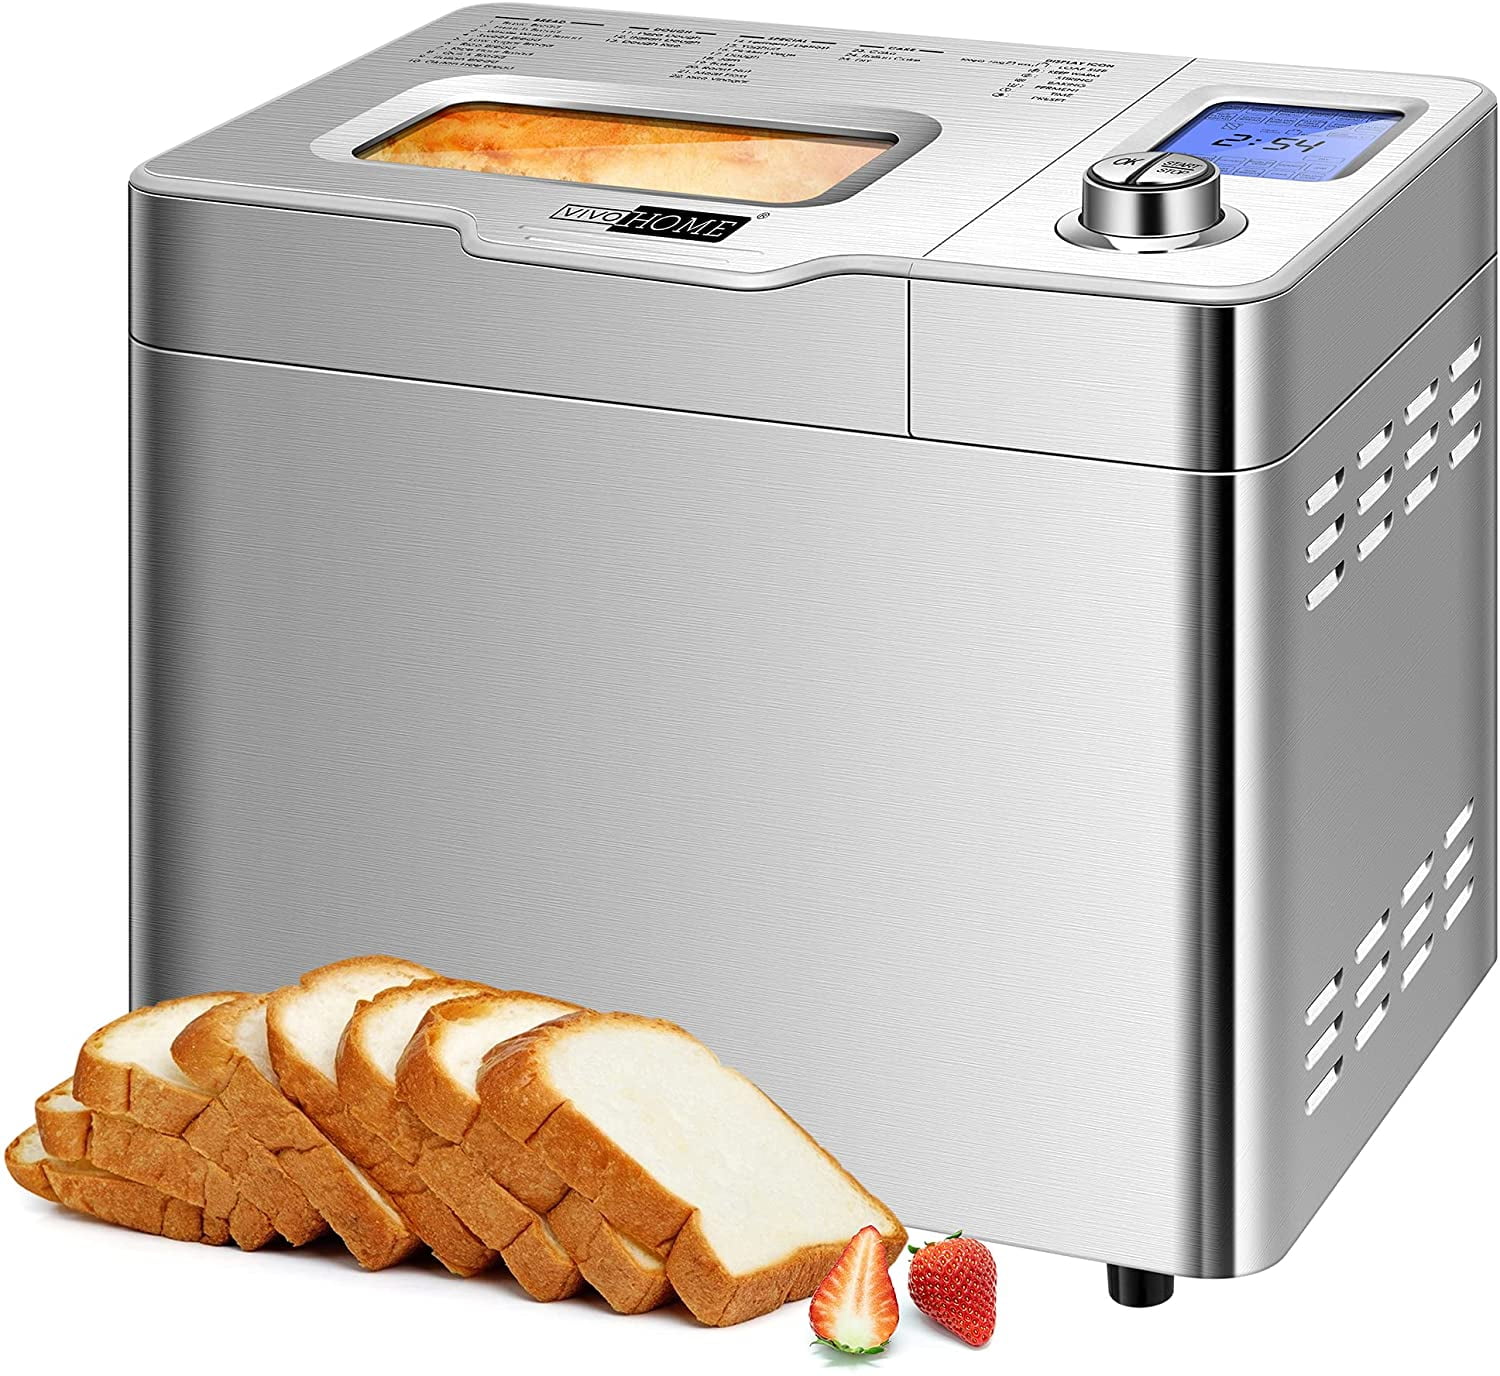 Aicok bread maker machine new 